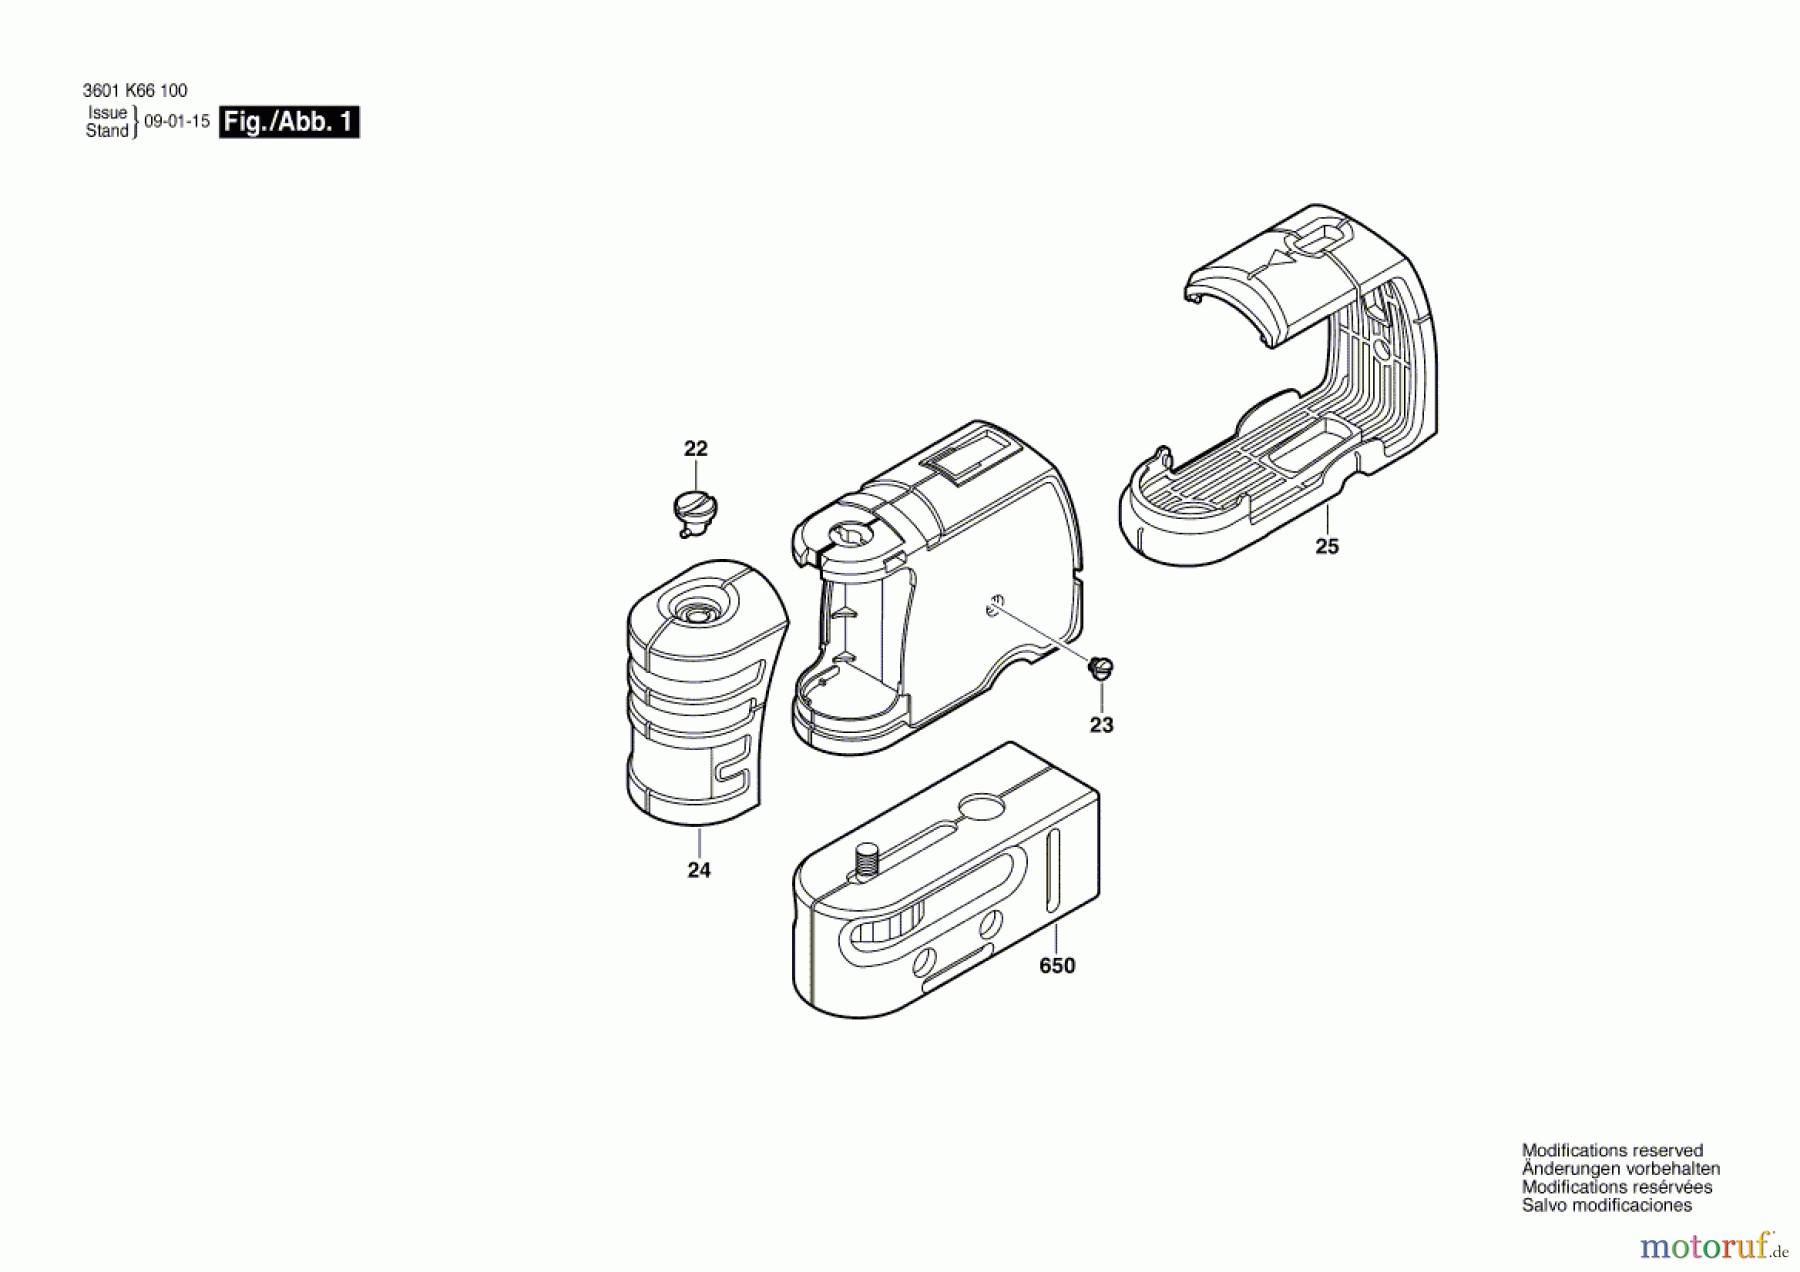  Bosch Werkzeug Baulaser GPL 3 Seite 1